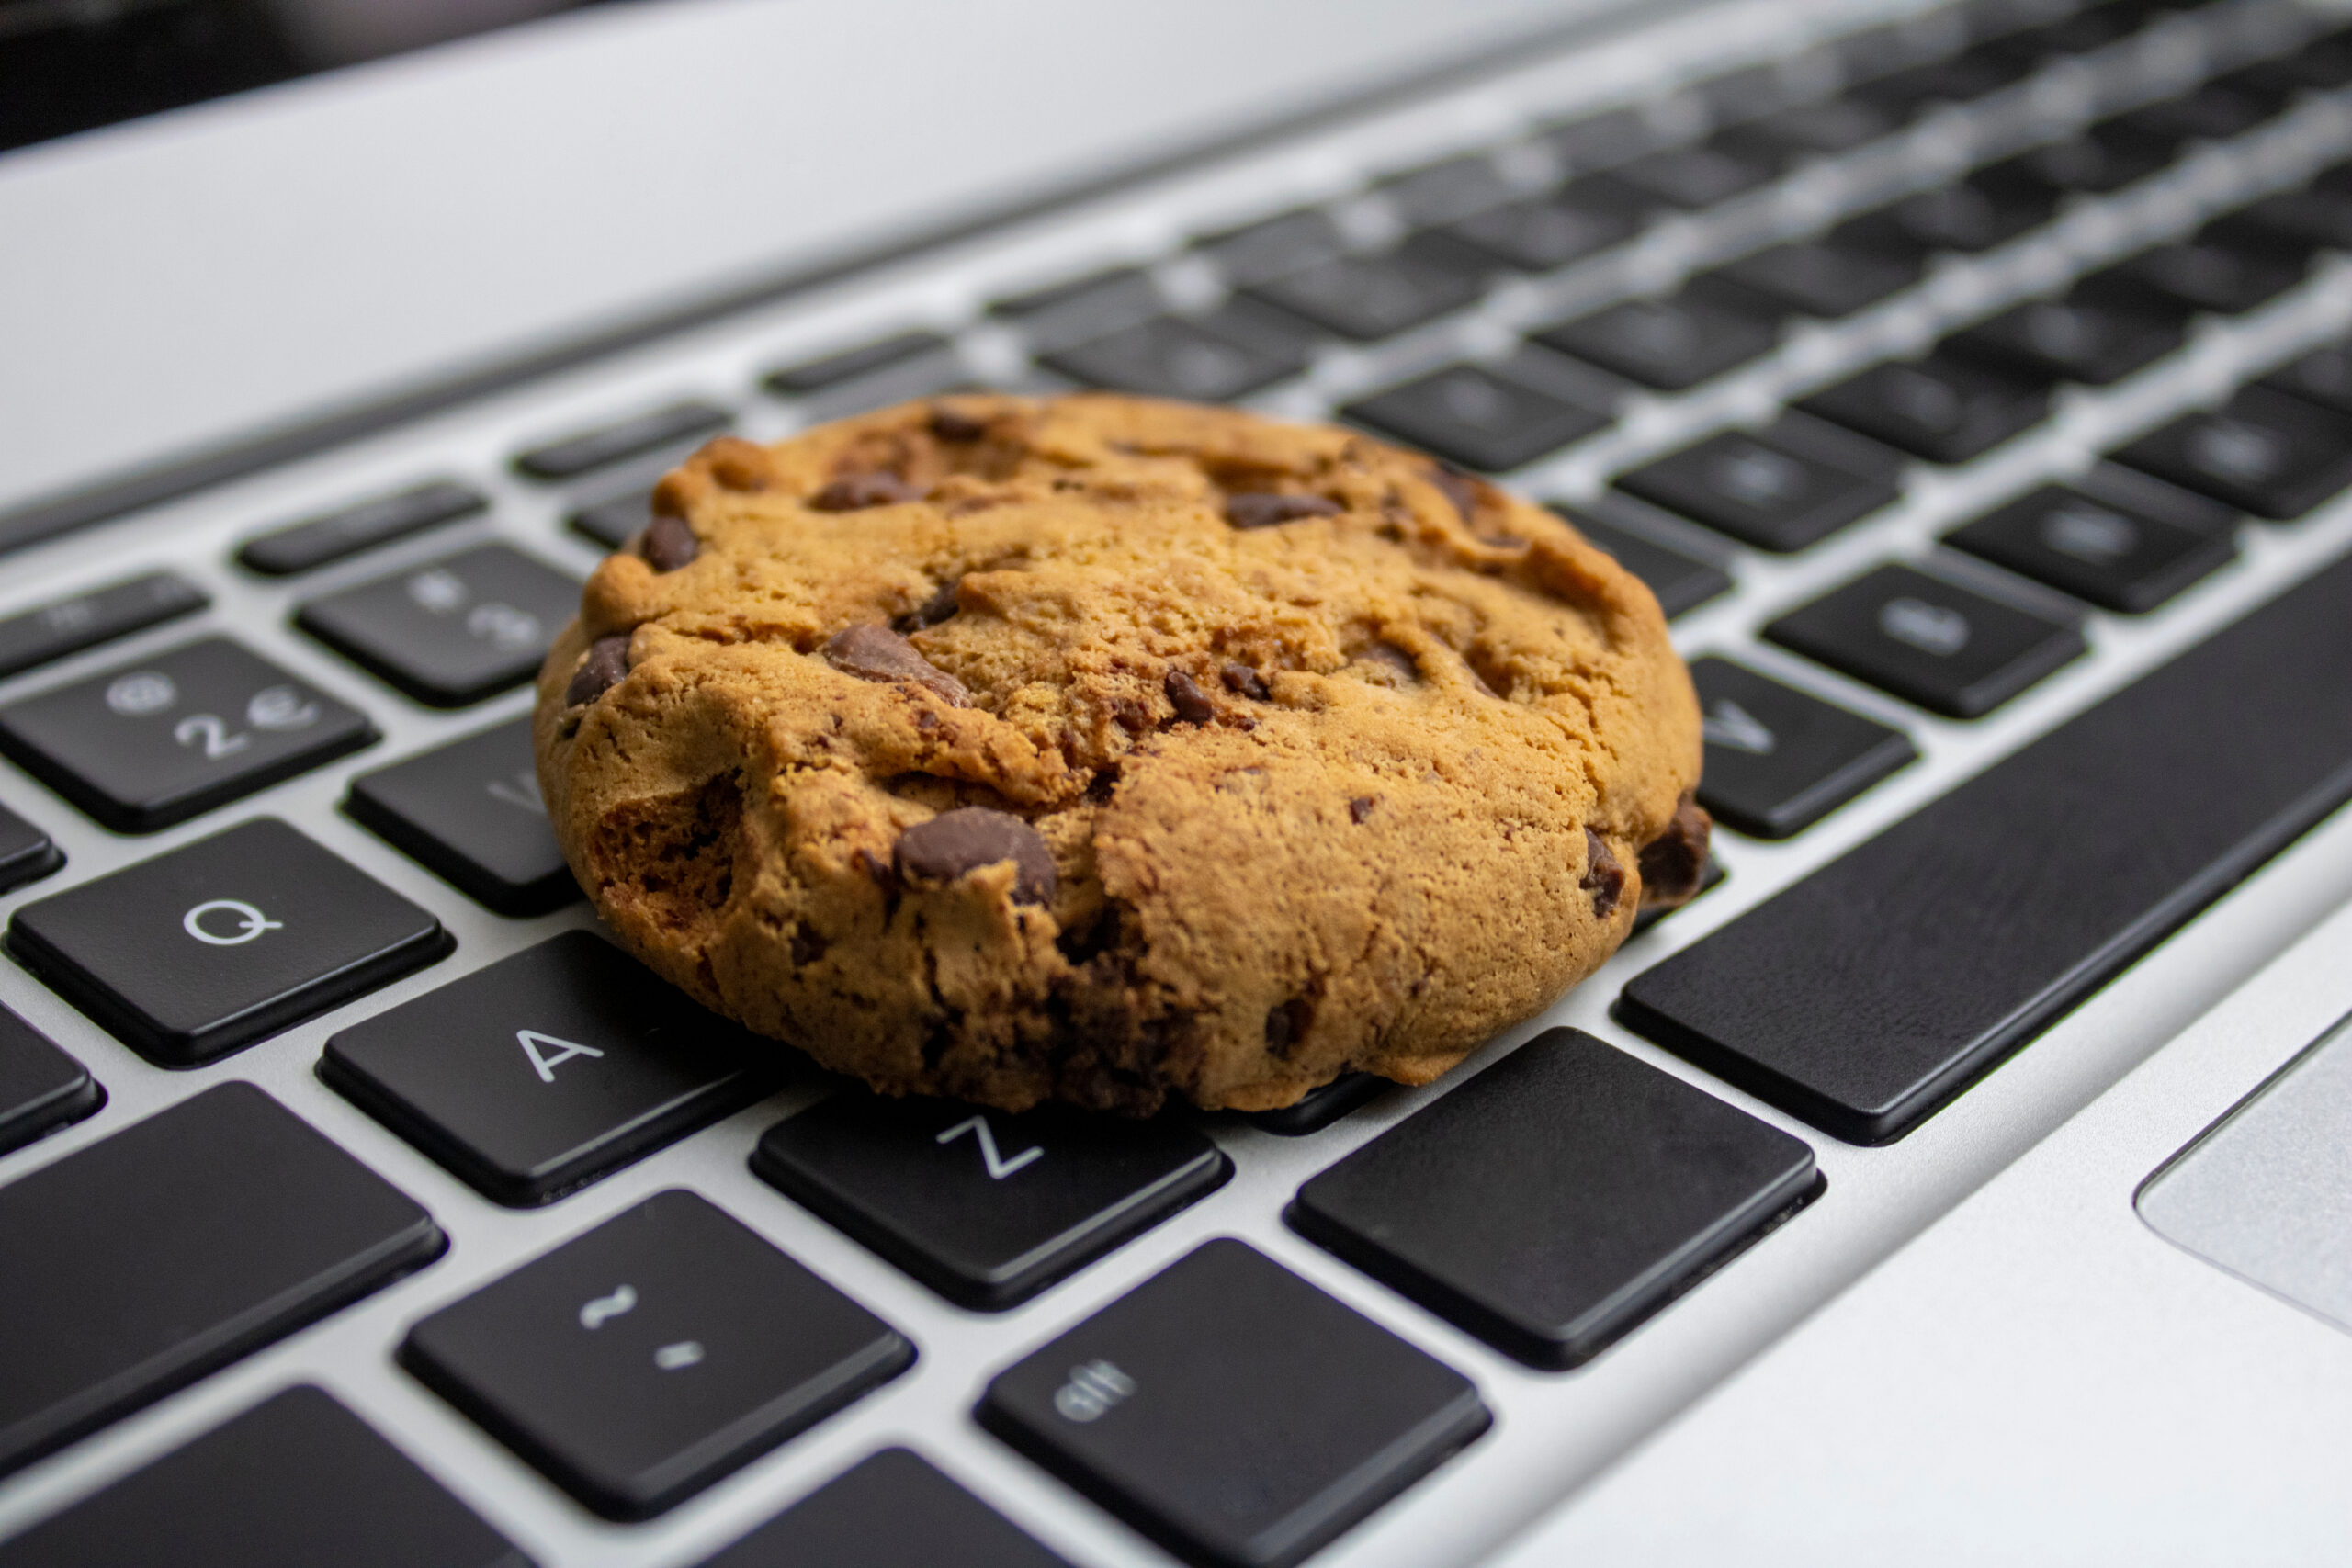 Imagem representativa mostra biscoitos (ou "cookies") em cima de um teclado de computador, em referência aos arquivos de navegação de internet dos usuários